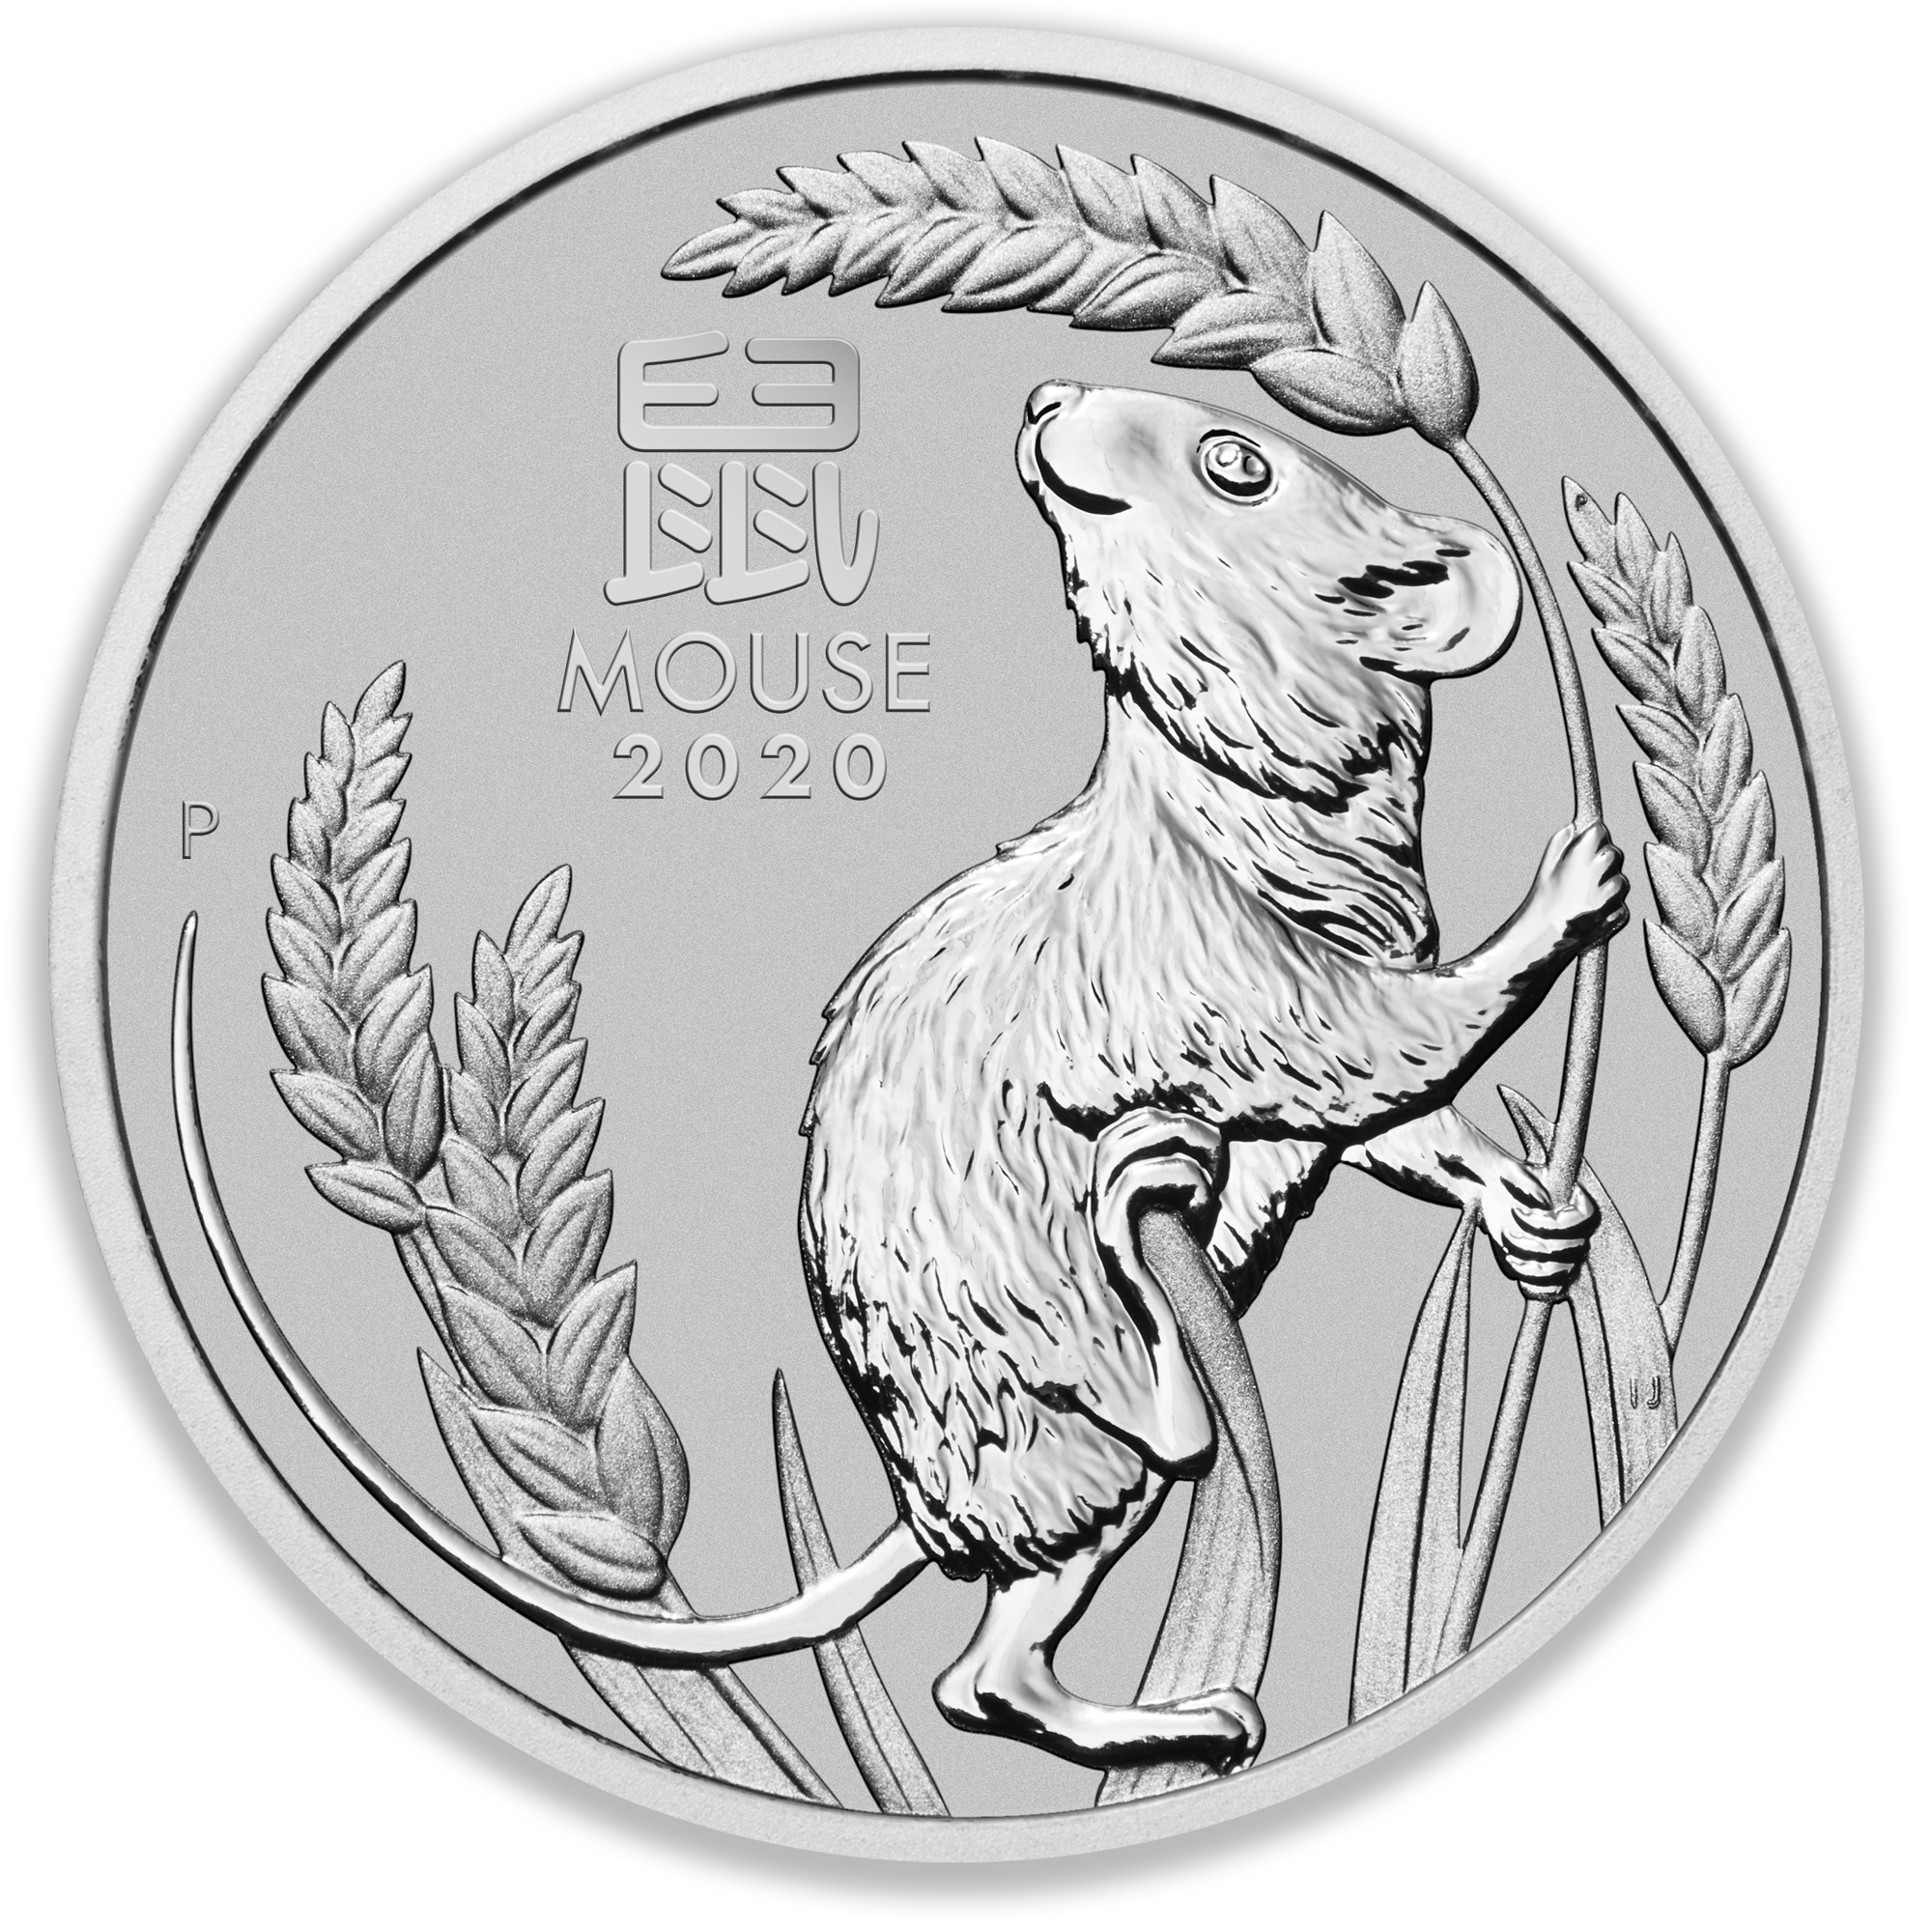 2020 1oz Perth Mint Platinum Lunar Mouse Coin